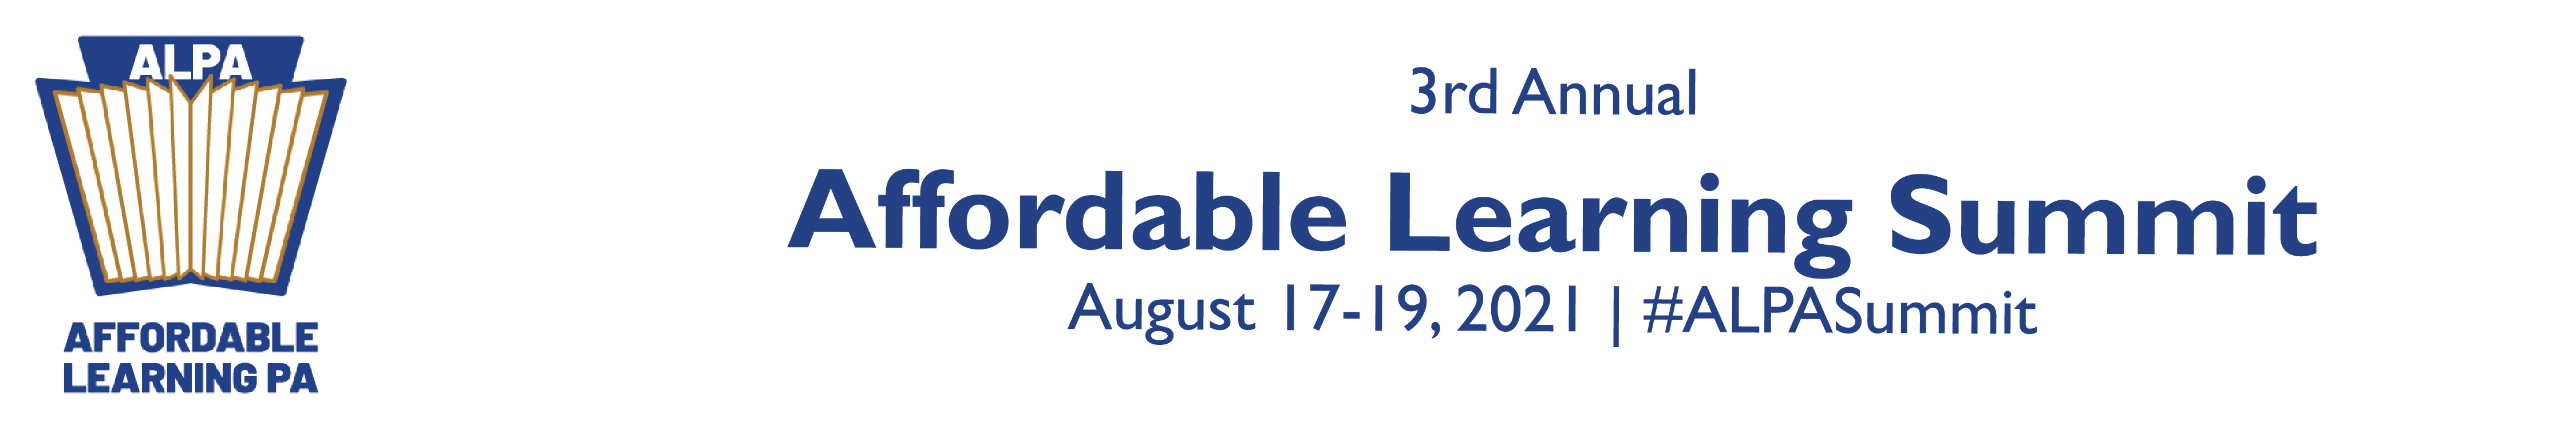 ALPA Summit 2021 | Affordable Learning Summit Logo